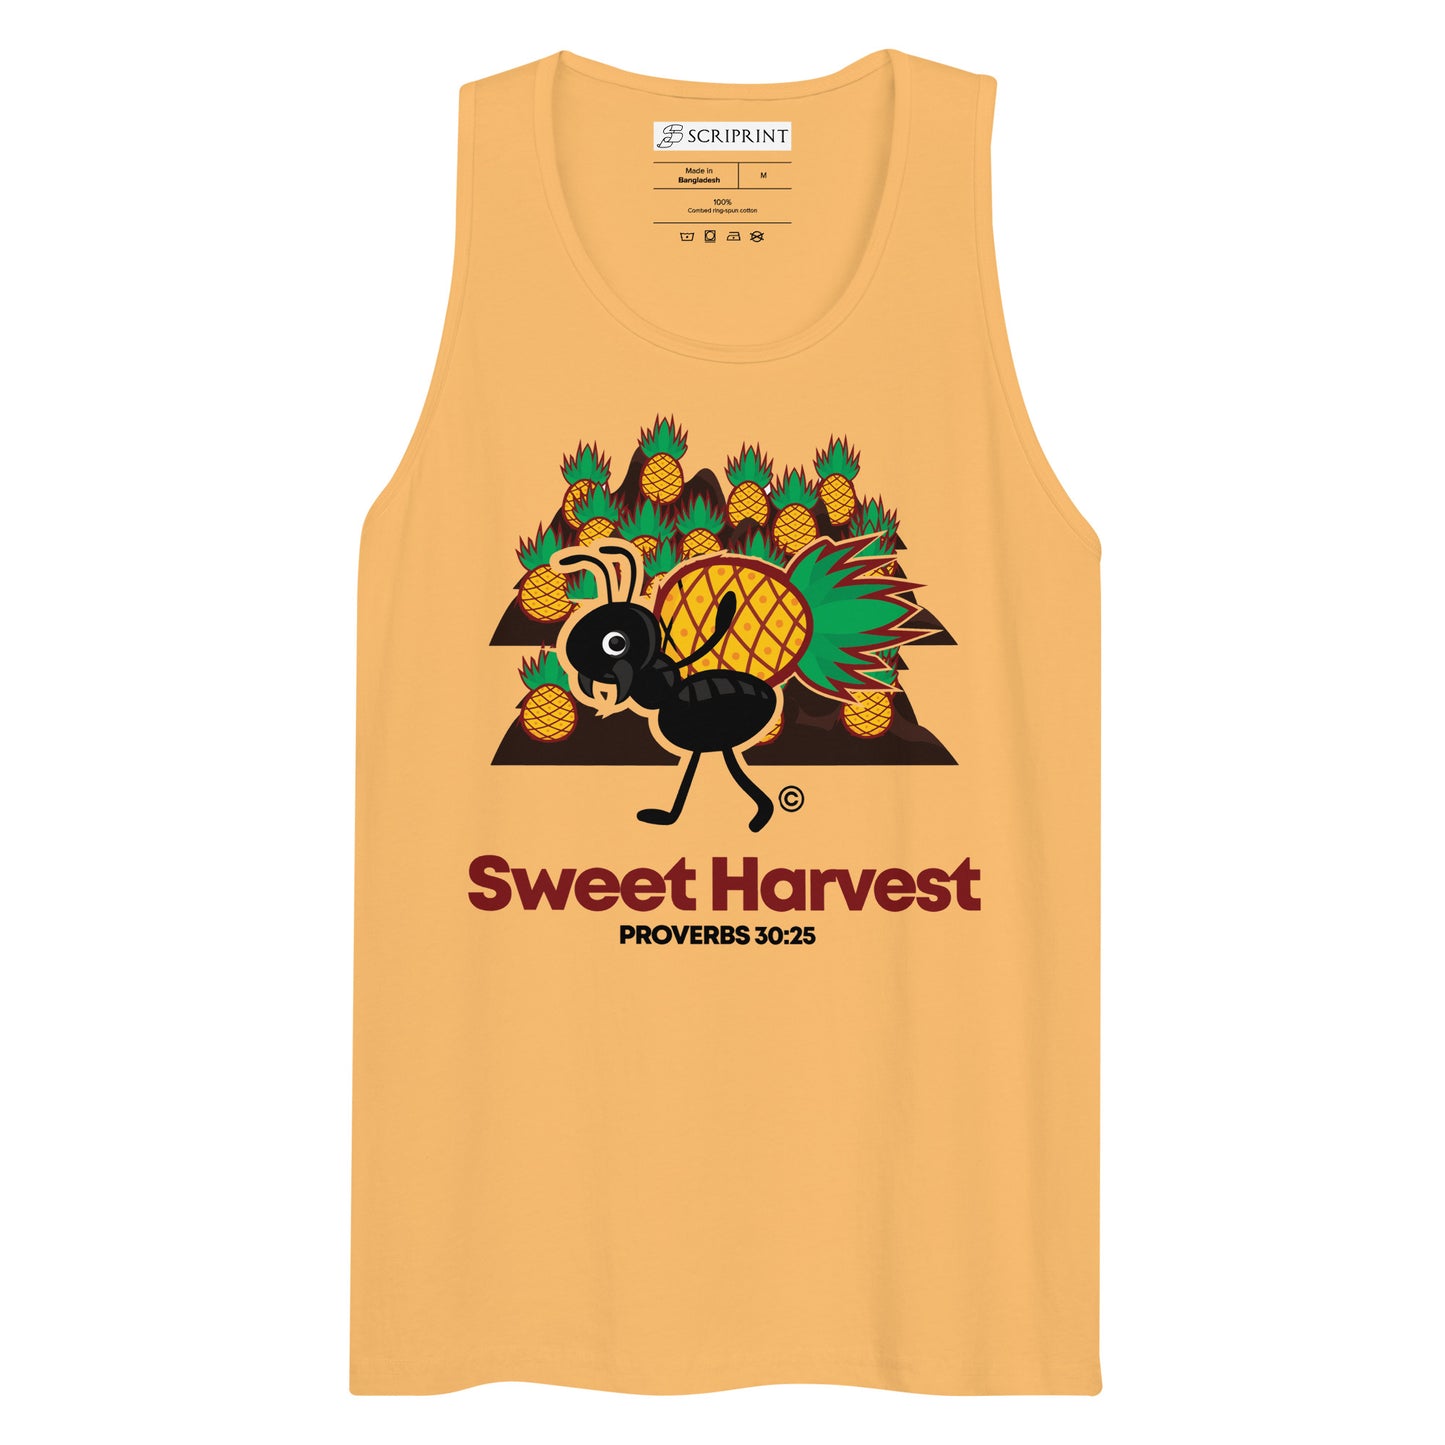 Sweet Harvest Men’s Premium Tank Top